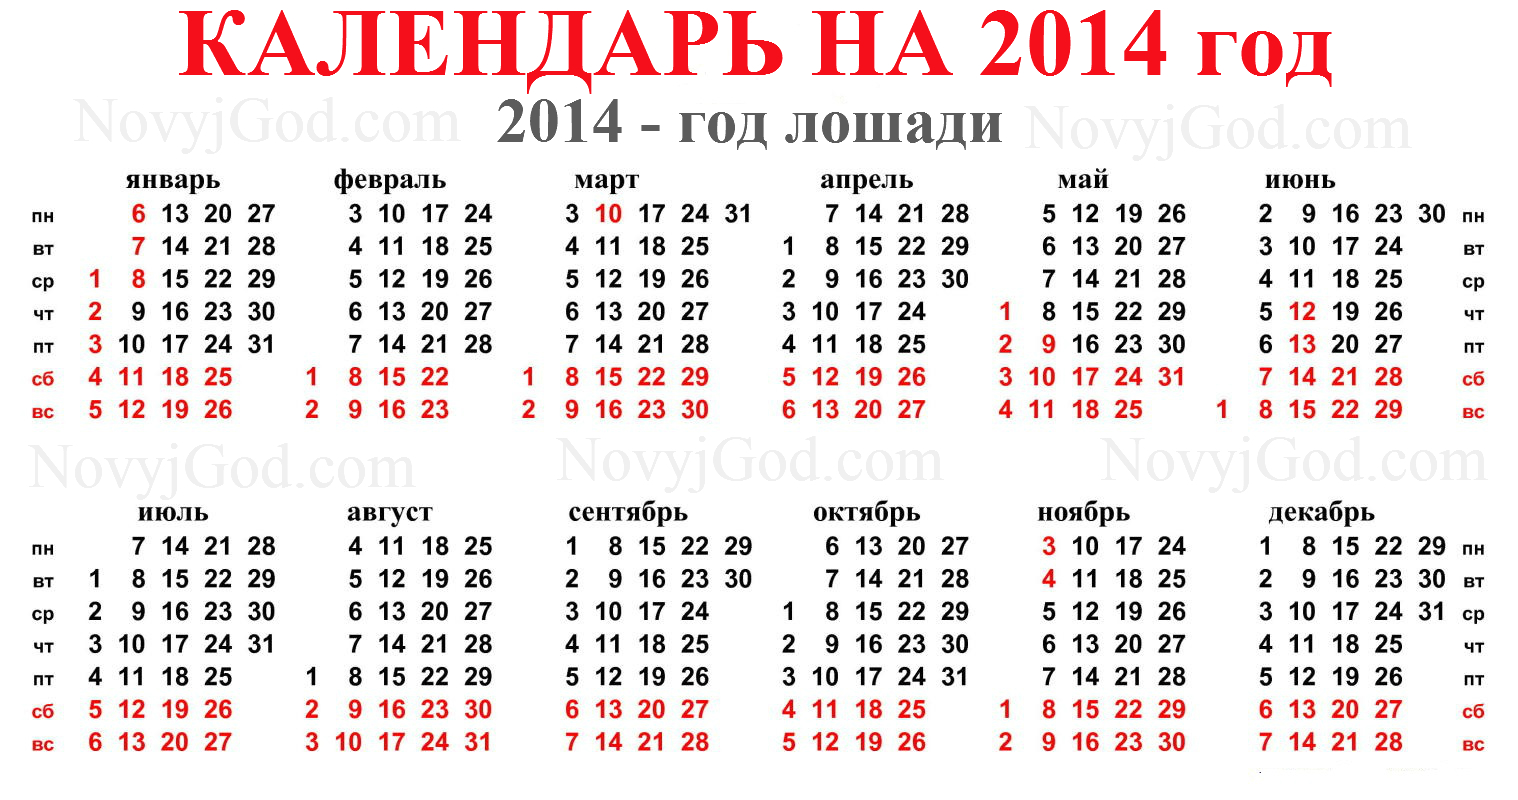 3 апреля день недели. Календарь 2014 года. Календарь 2011. Календарь 2014 года по месяцам. Производственный календарь 2014.